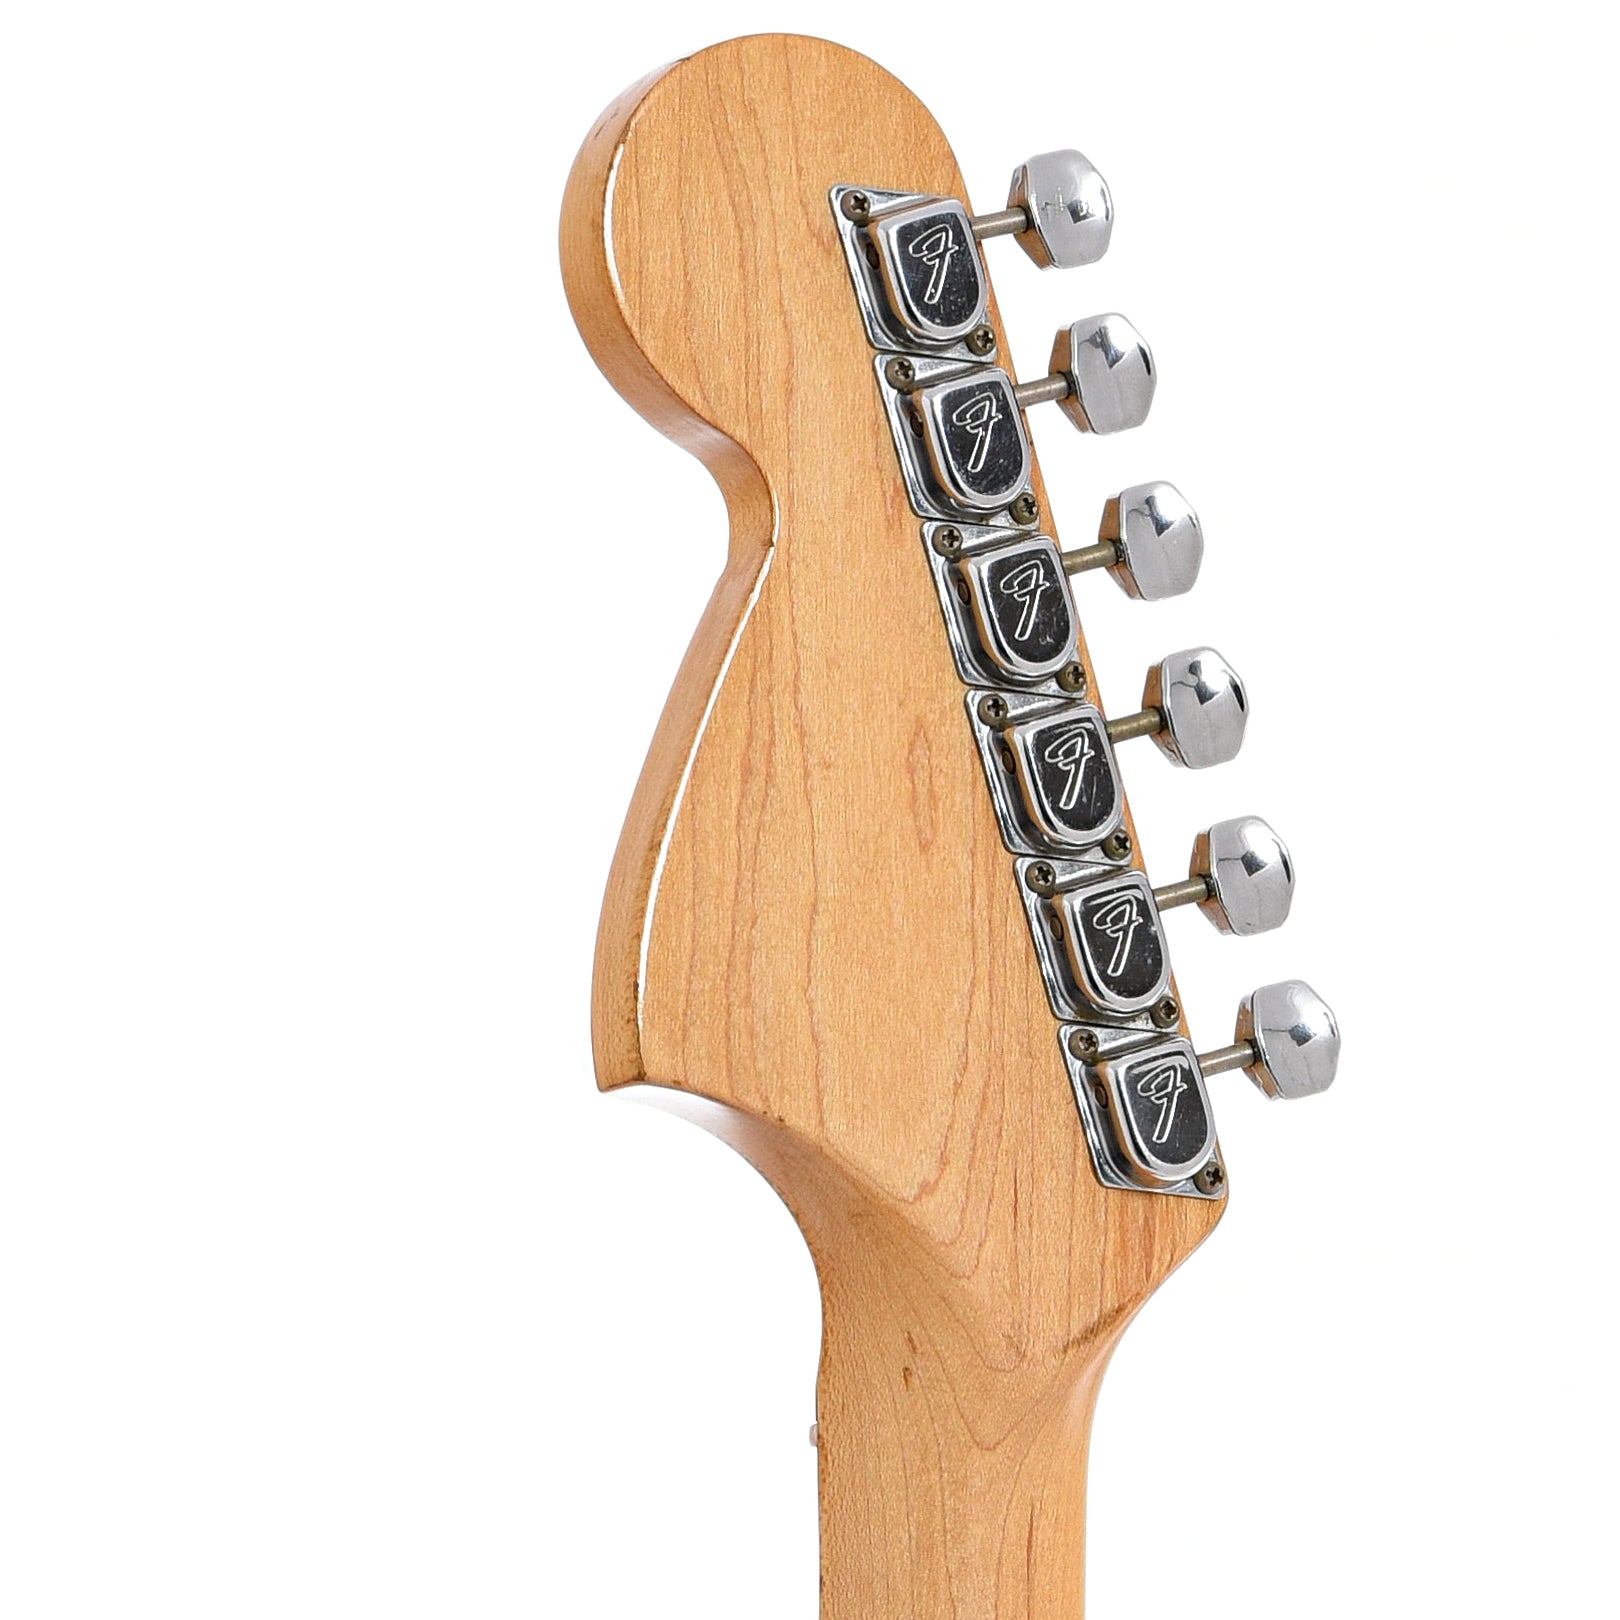 Back headstock of Fender Stratocaster